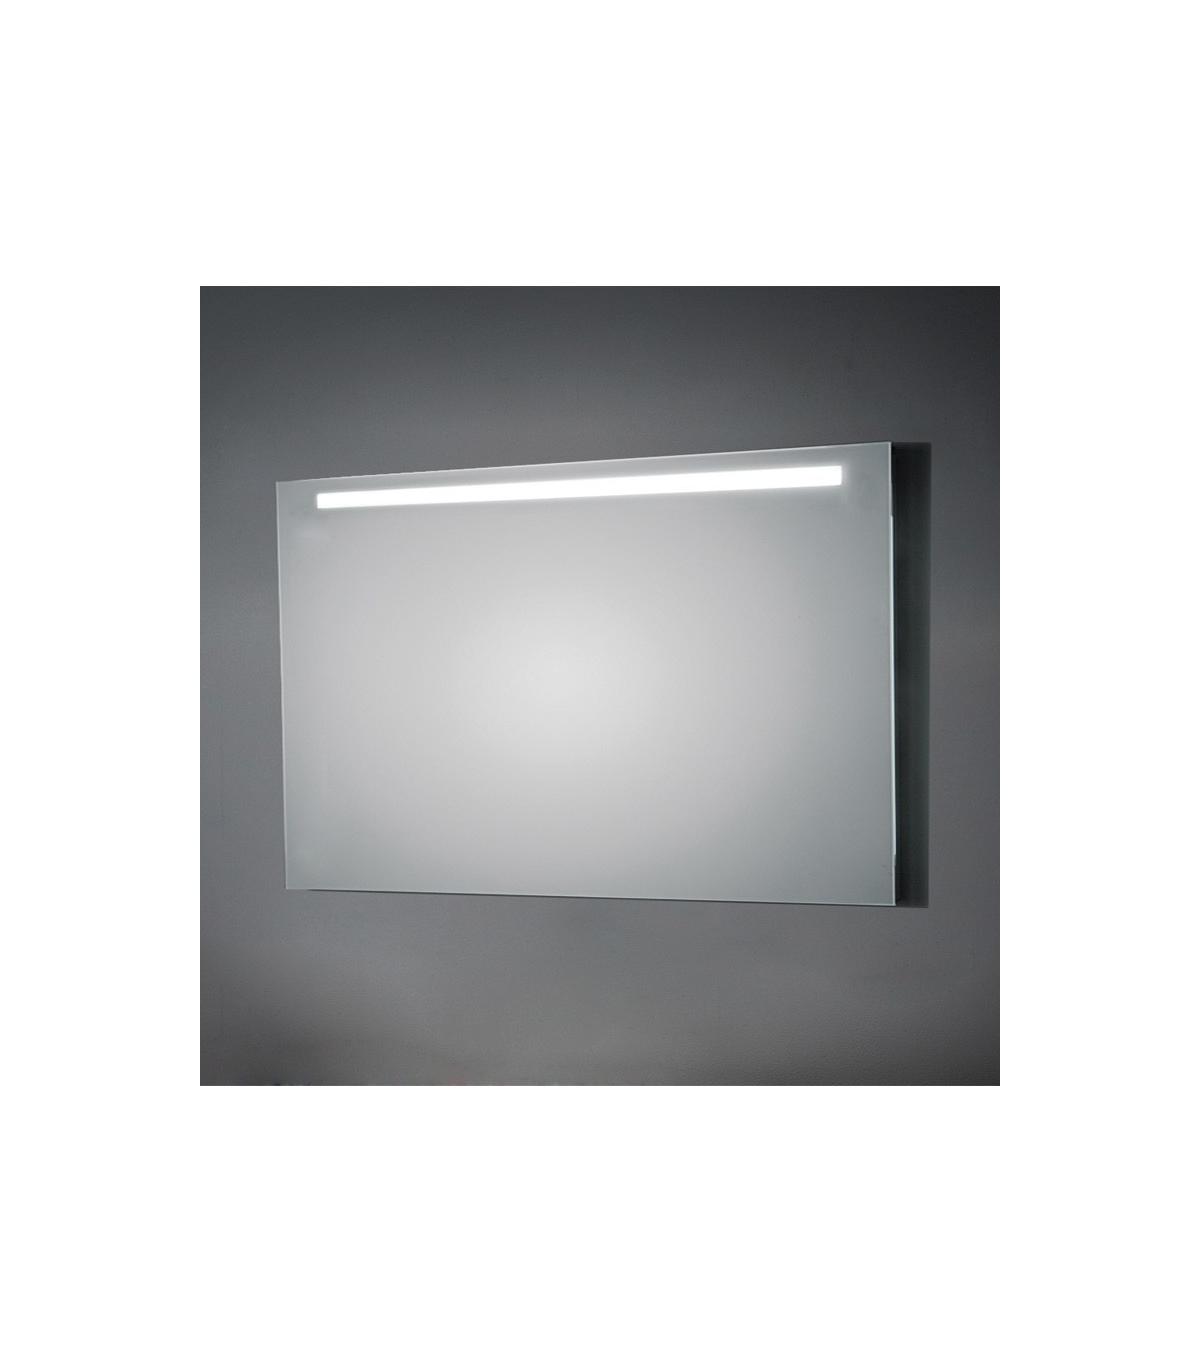 Specchio con luce superiore a LED Koh-I-Noor altezza 80 cm